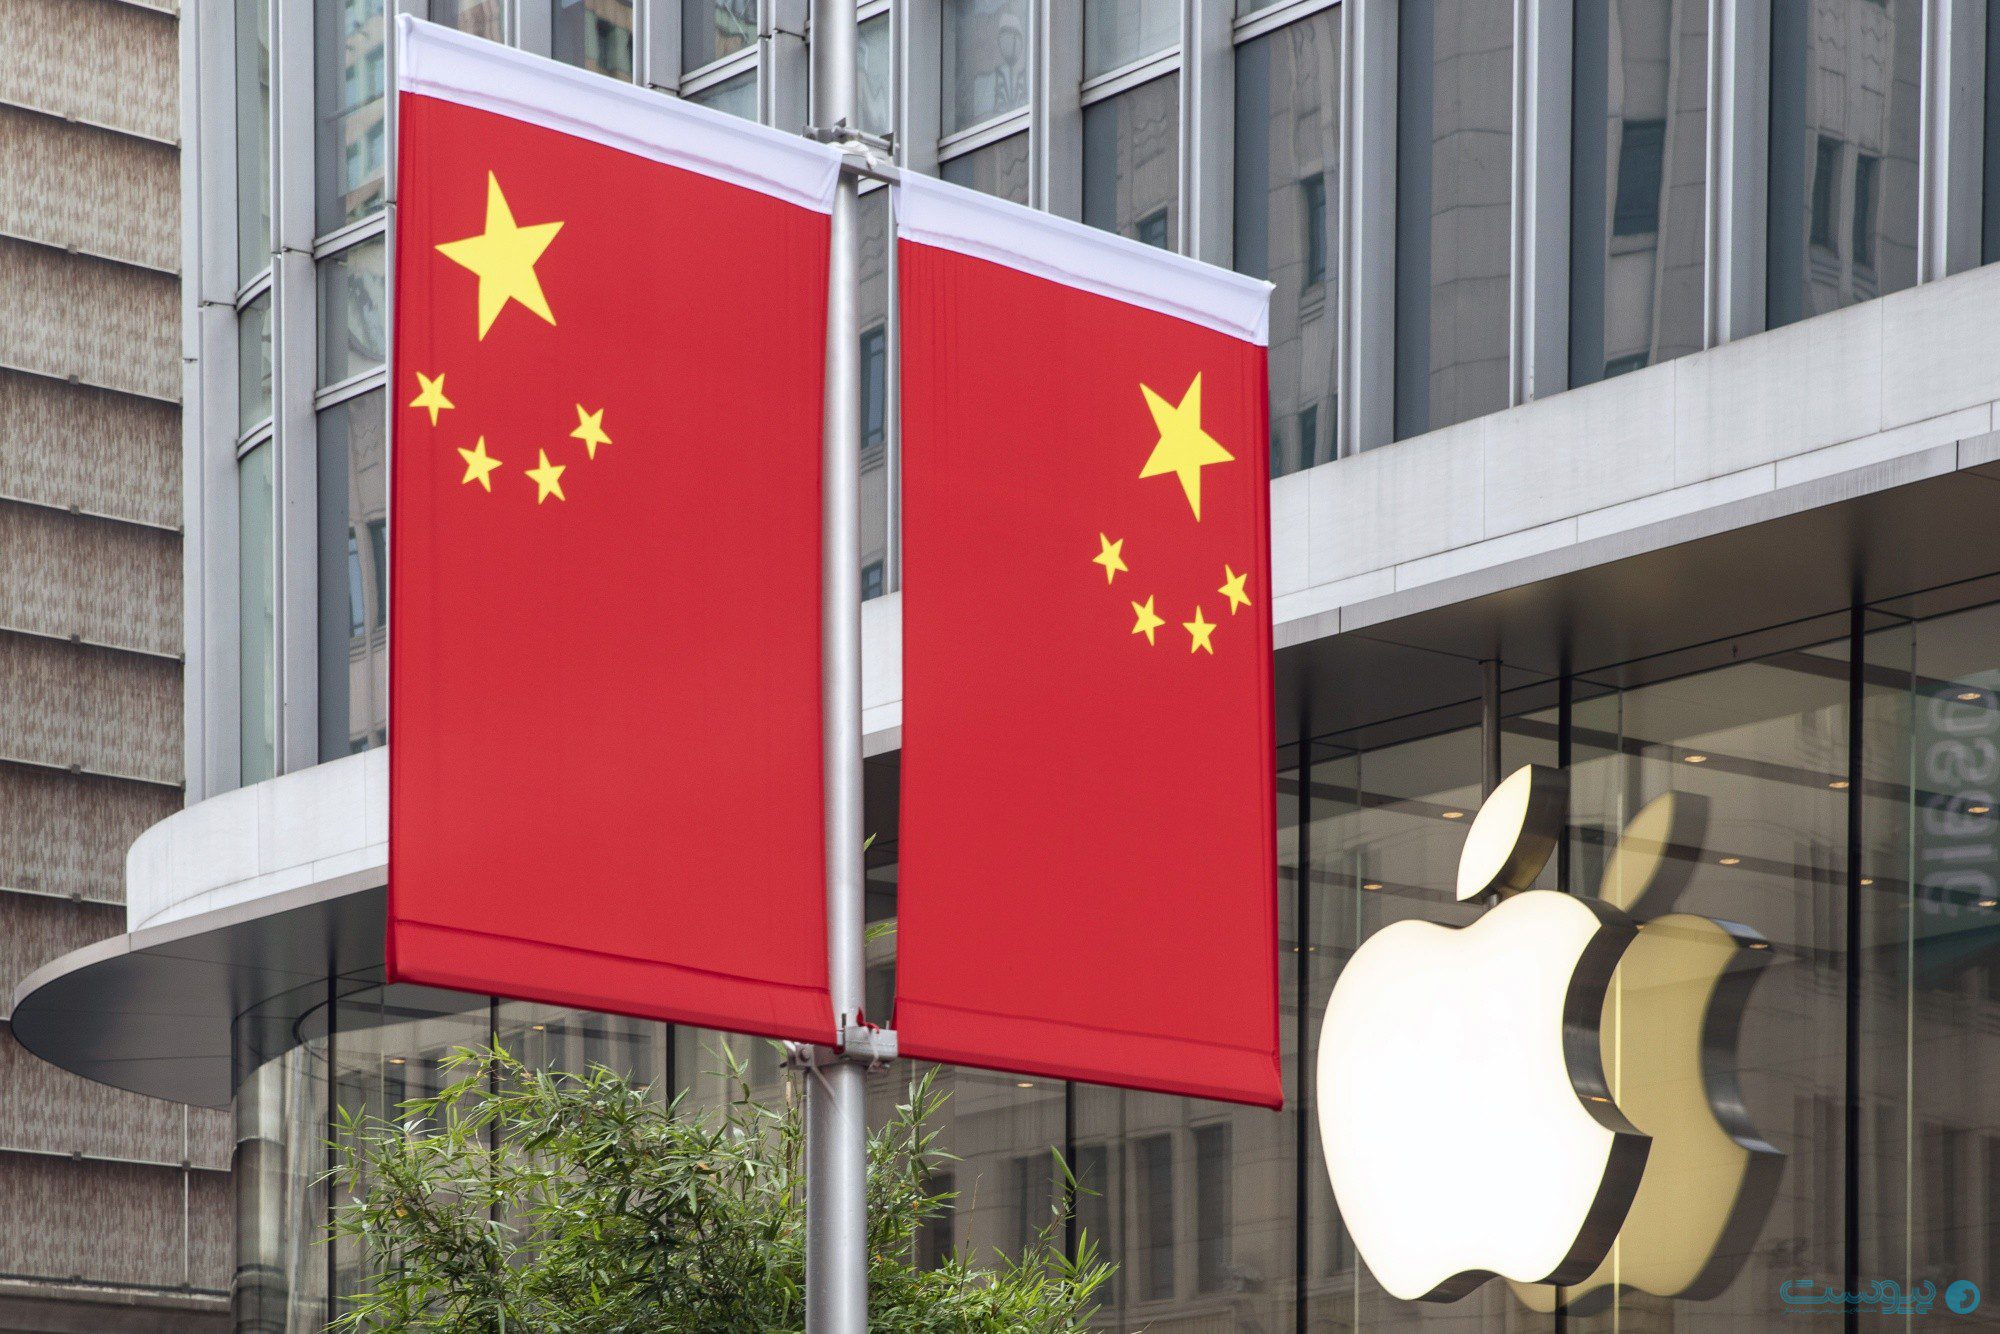 فروش اپل در چین سقوط کرد؛ هواوی سهم آیفون را - آژانس مدیا و مارکتینگ ردی استودیو